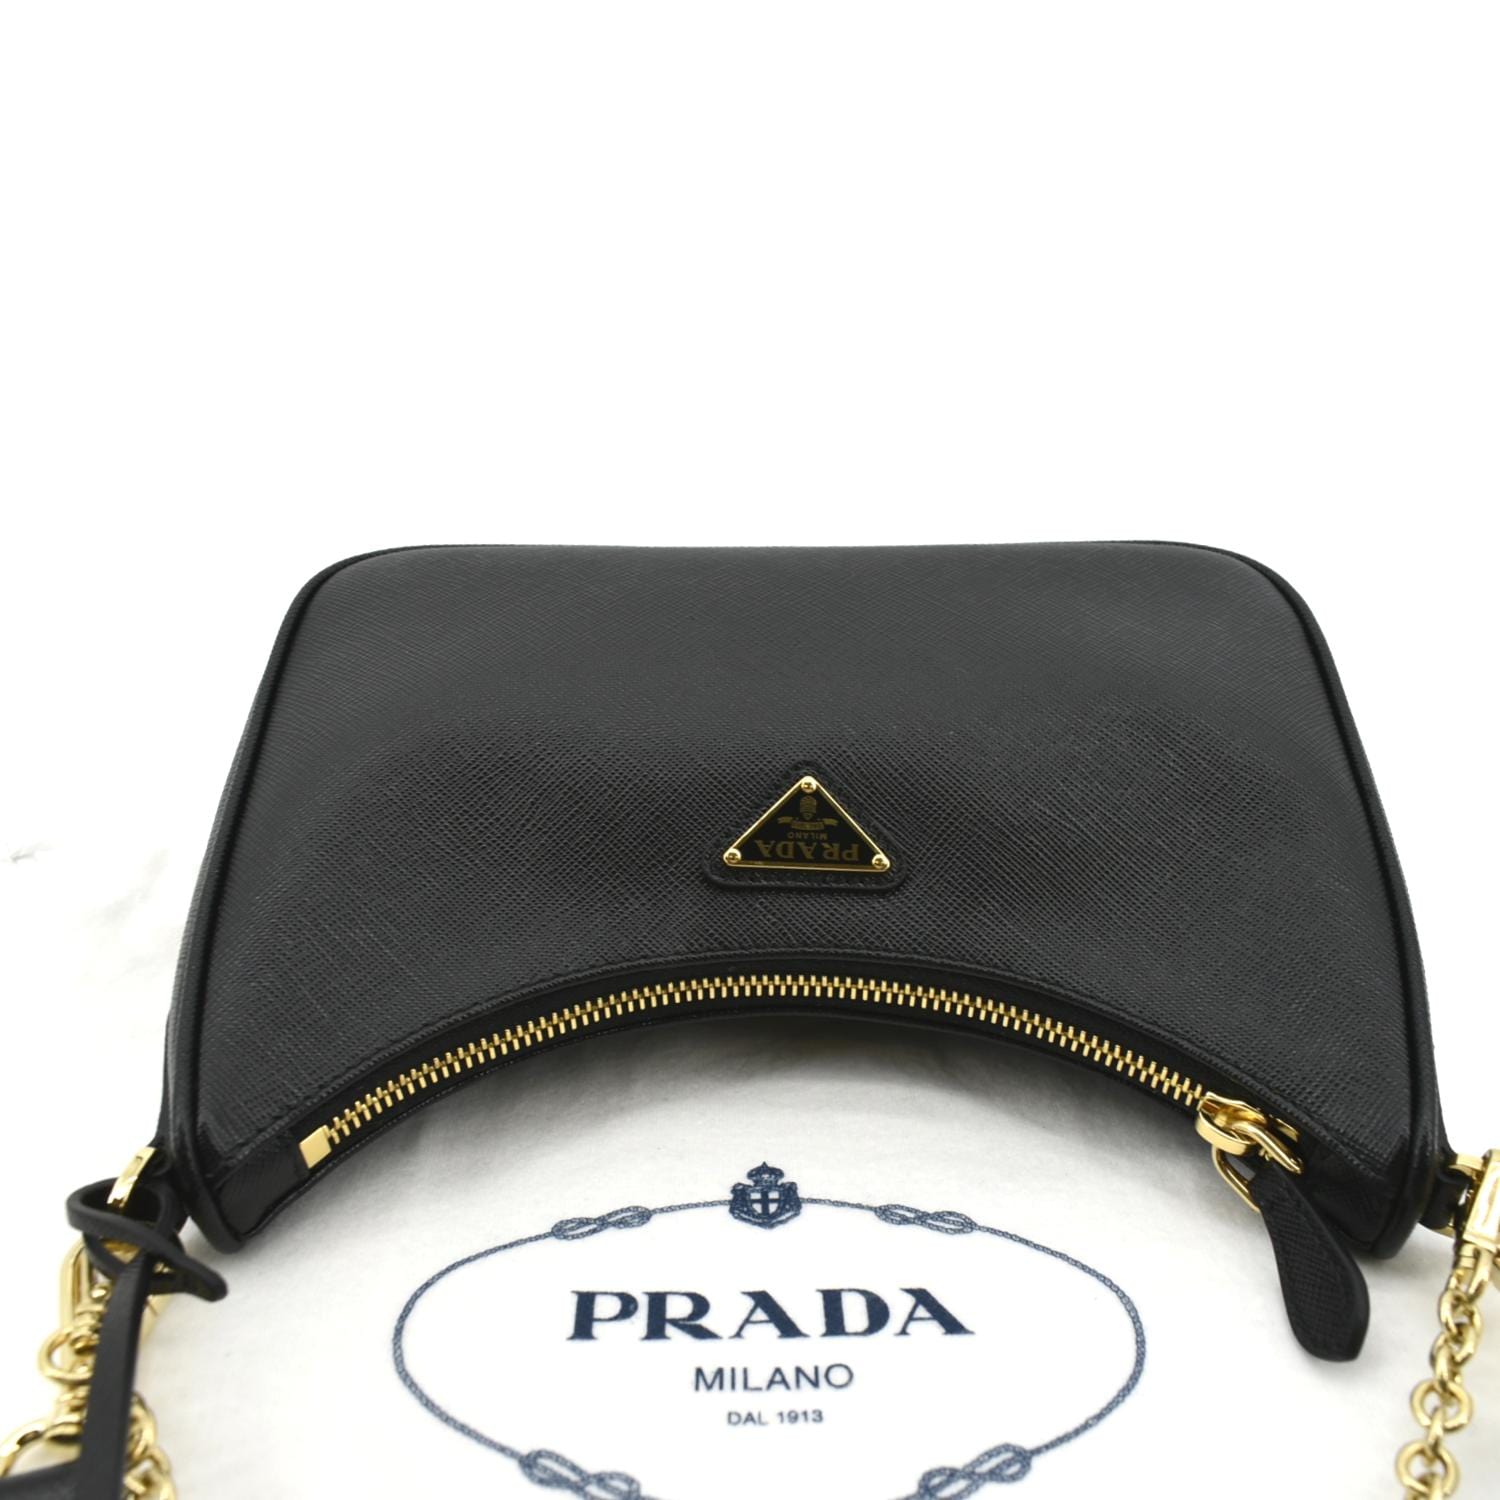 Prada Re-edition 2005 Saffiano Leather Bag in Black